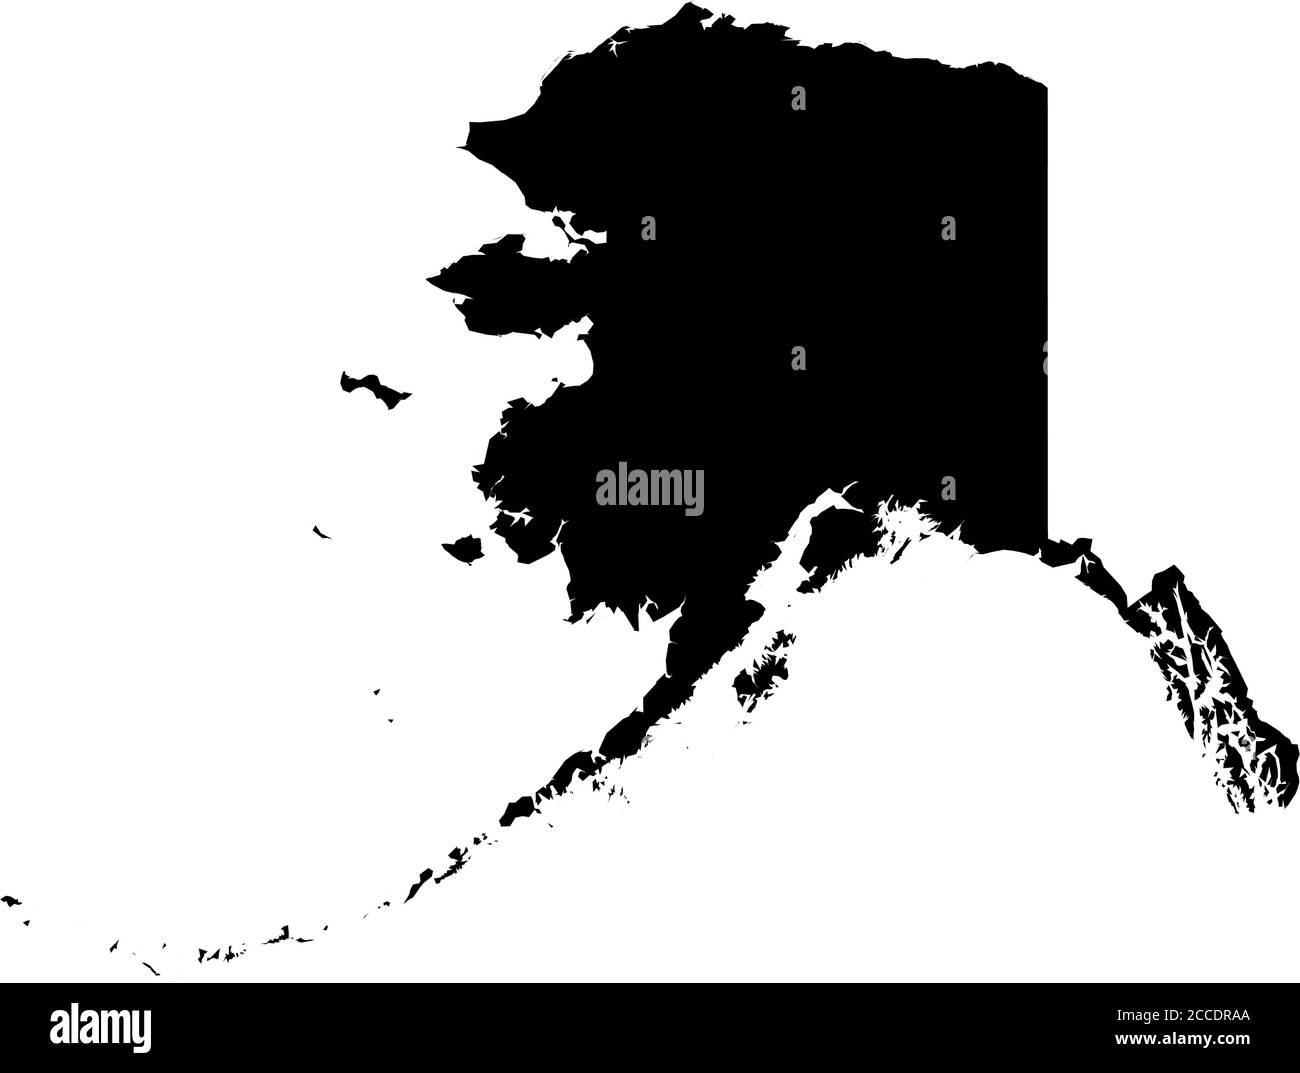 Alaska, State of USA - solide schwarze Silhouette Karte des Landes. Einfache flache Vektordarstellung. Stock Vektor